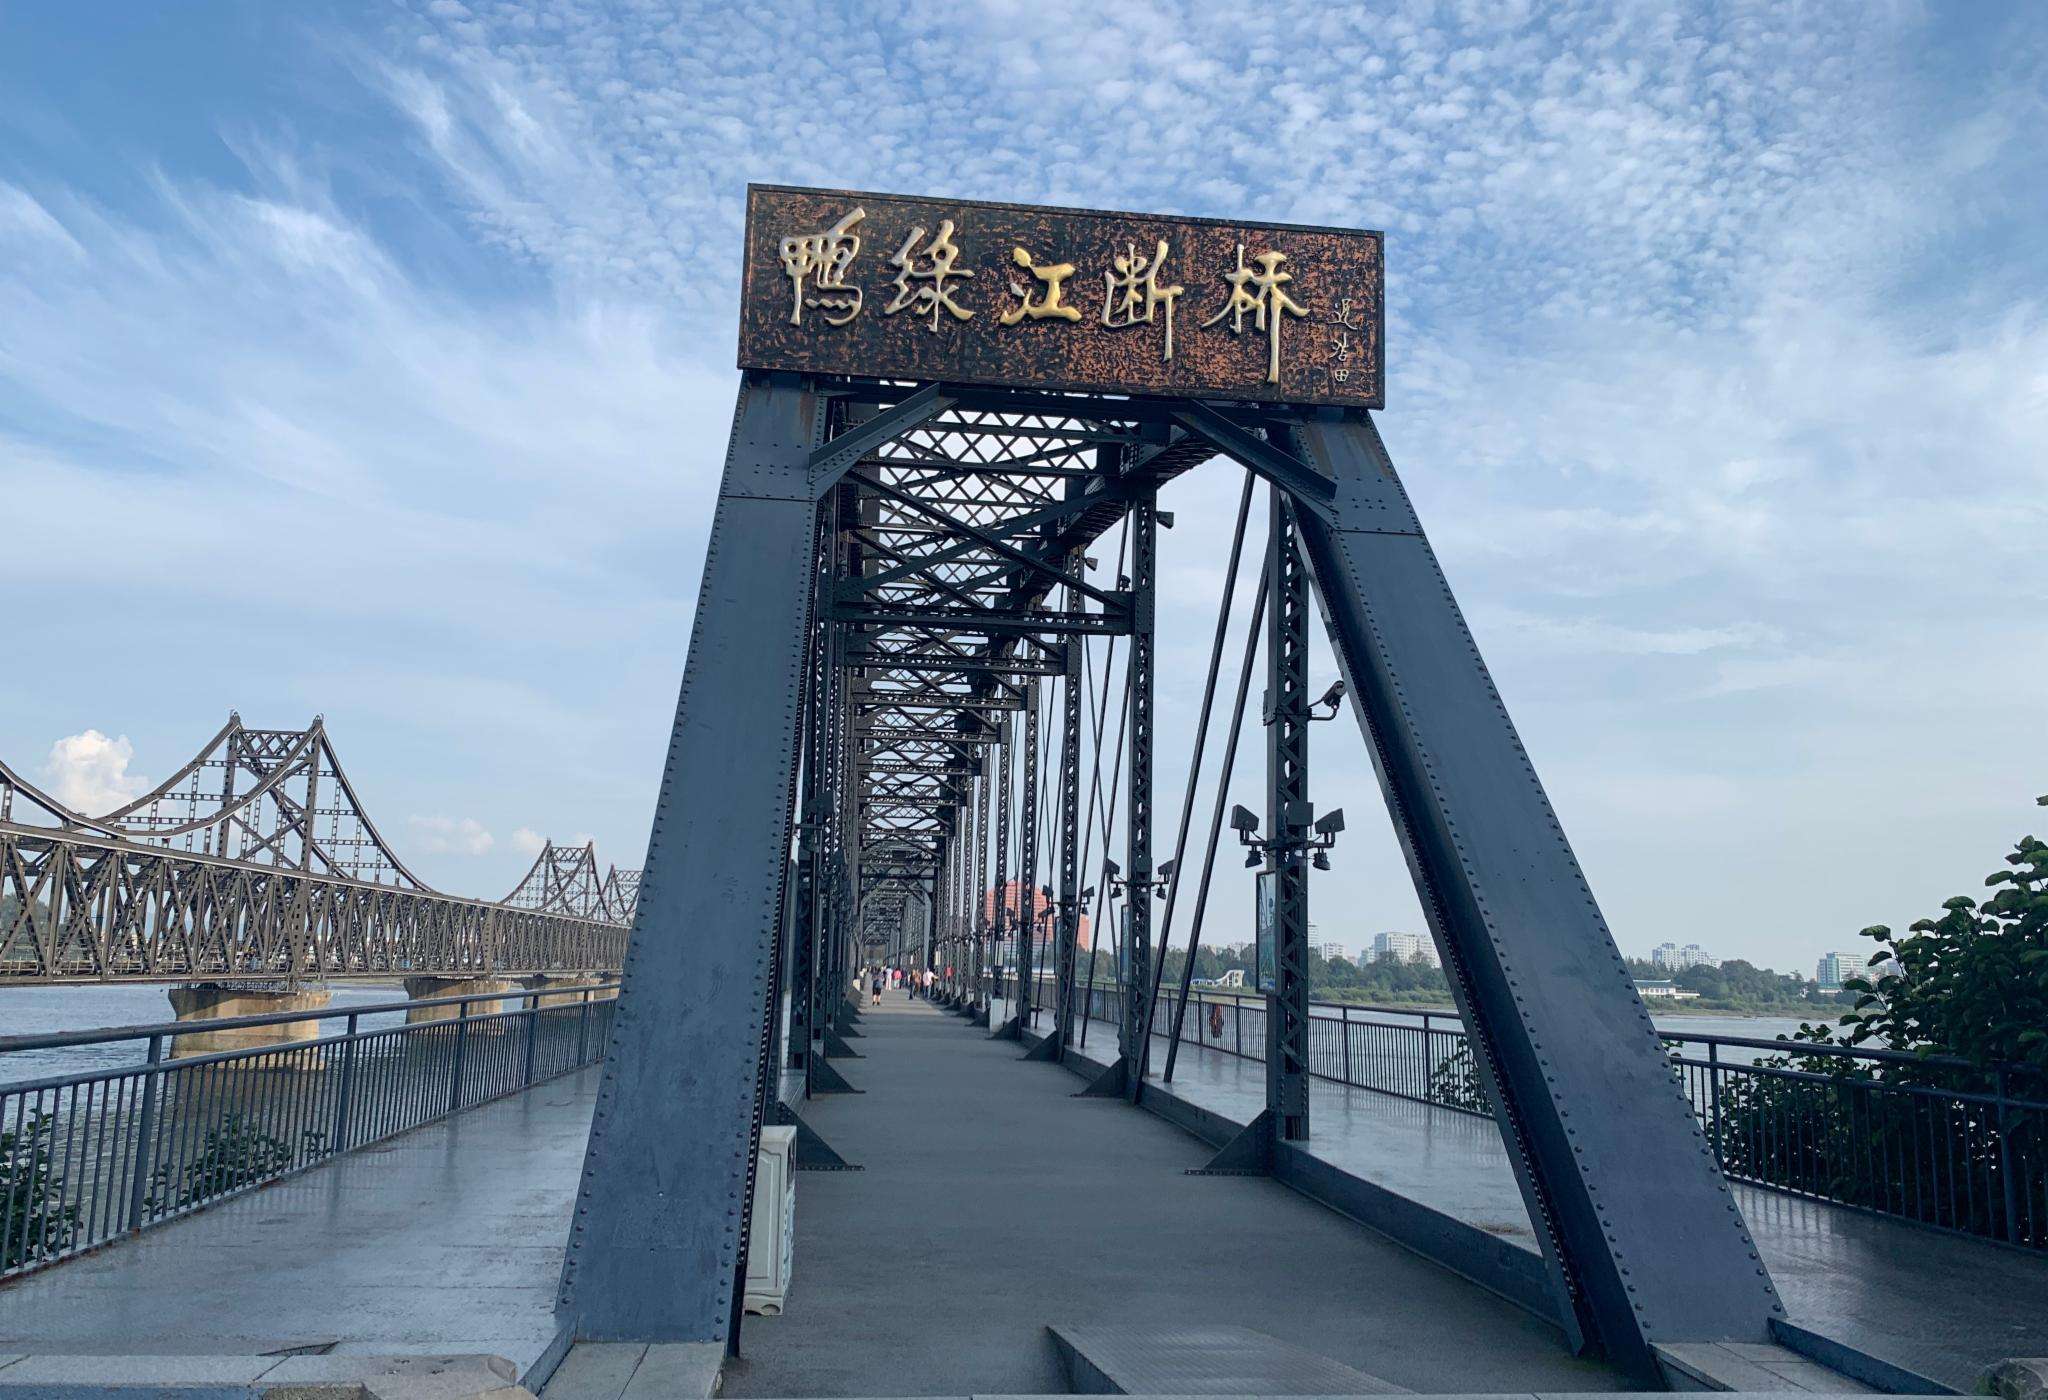 中朝鸭绿江大桥花了22亿,时隔9年却仍未通车!问题究竟出在哪?